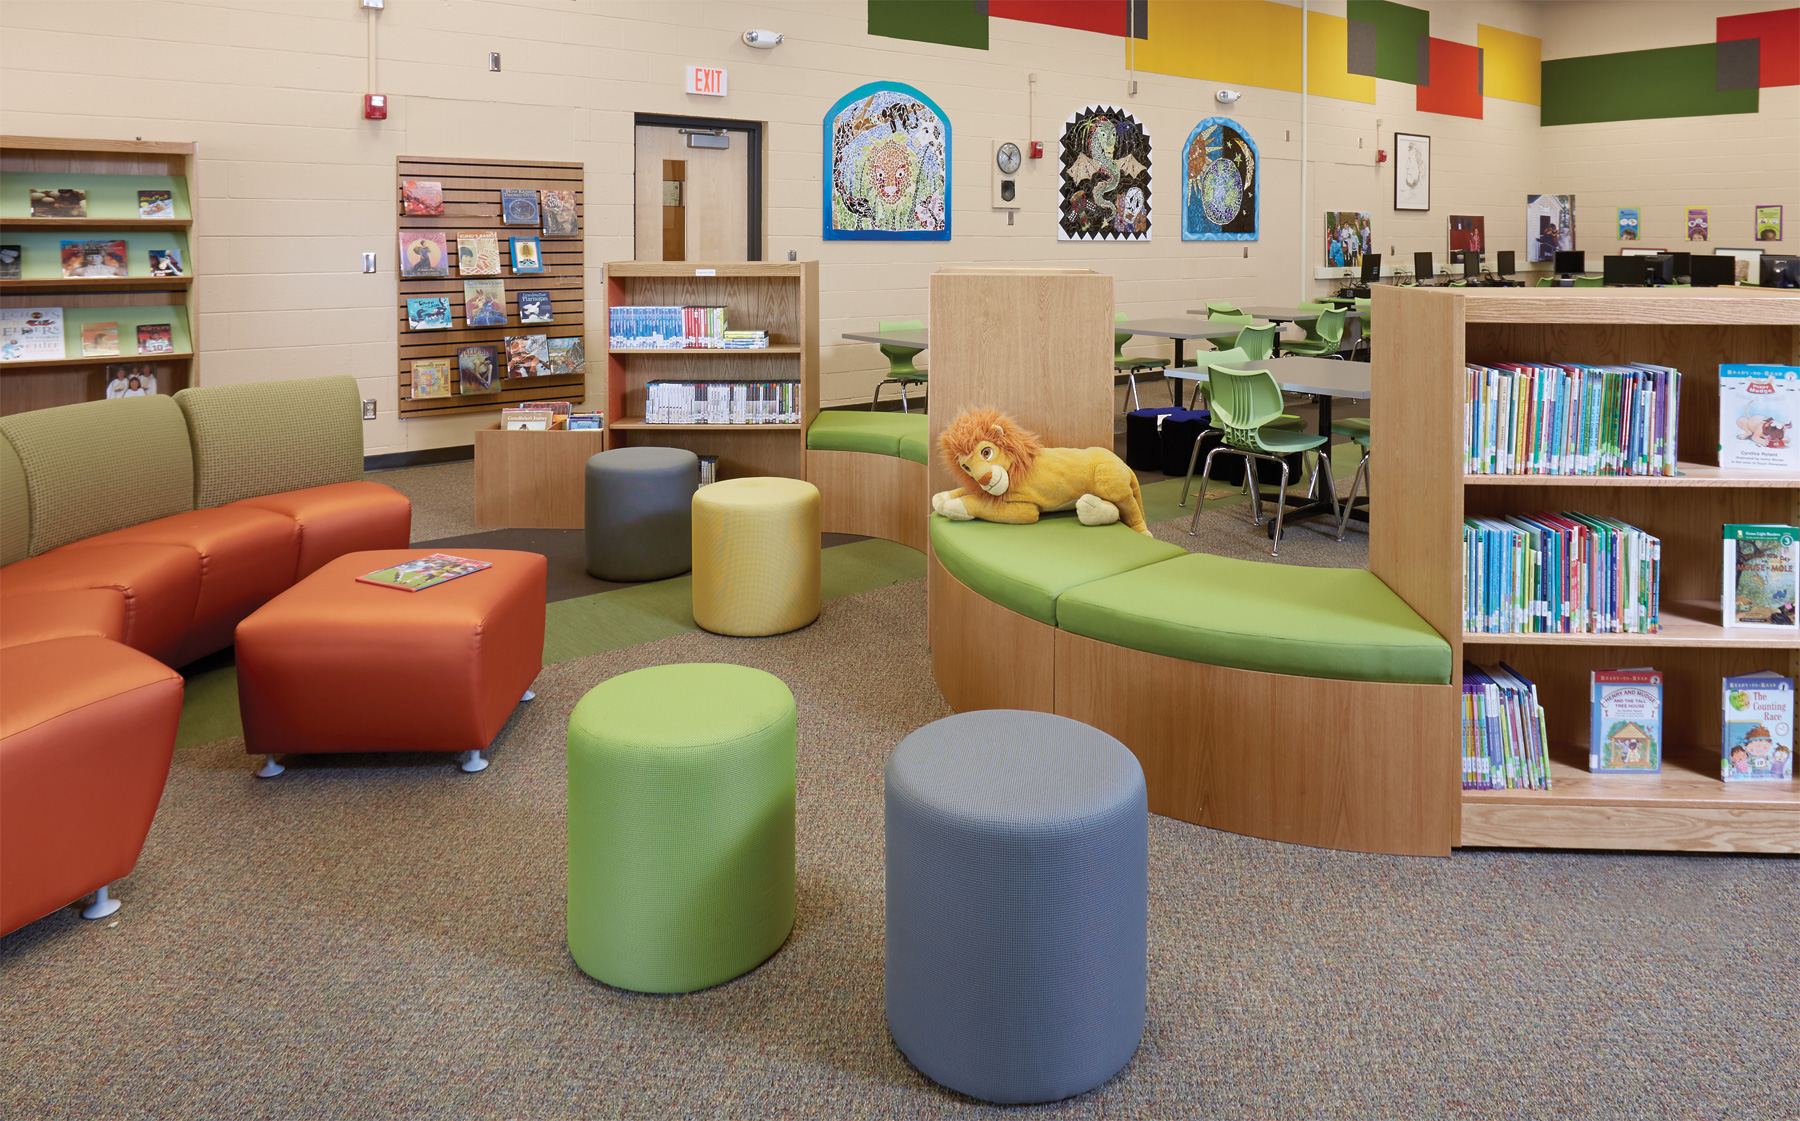 Мебель для читального зала библиотеки